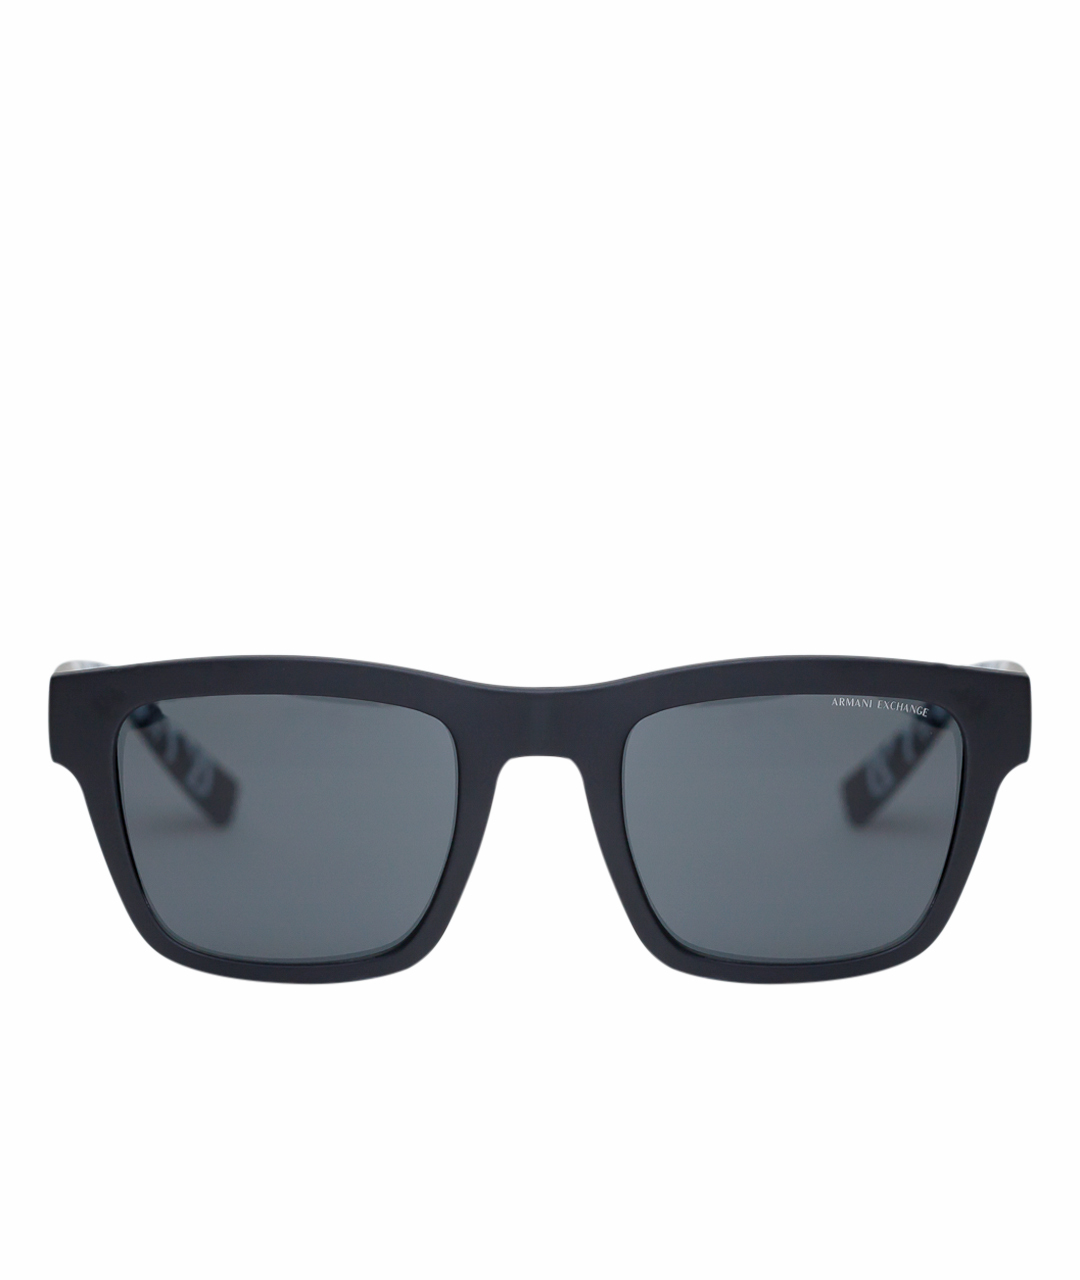 ARMANI EXCHANGE Черные пластиковые солнцезащитные очки, фото 1